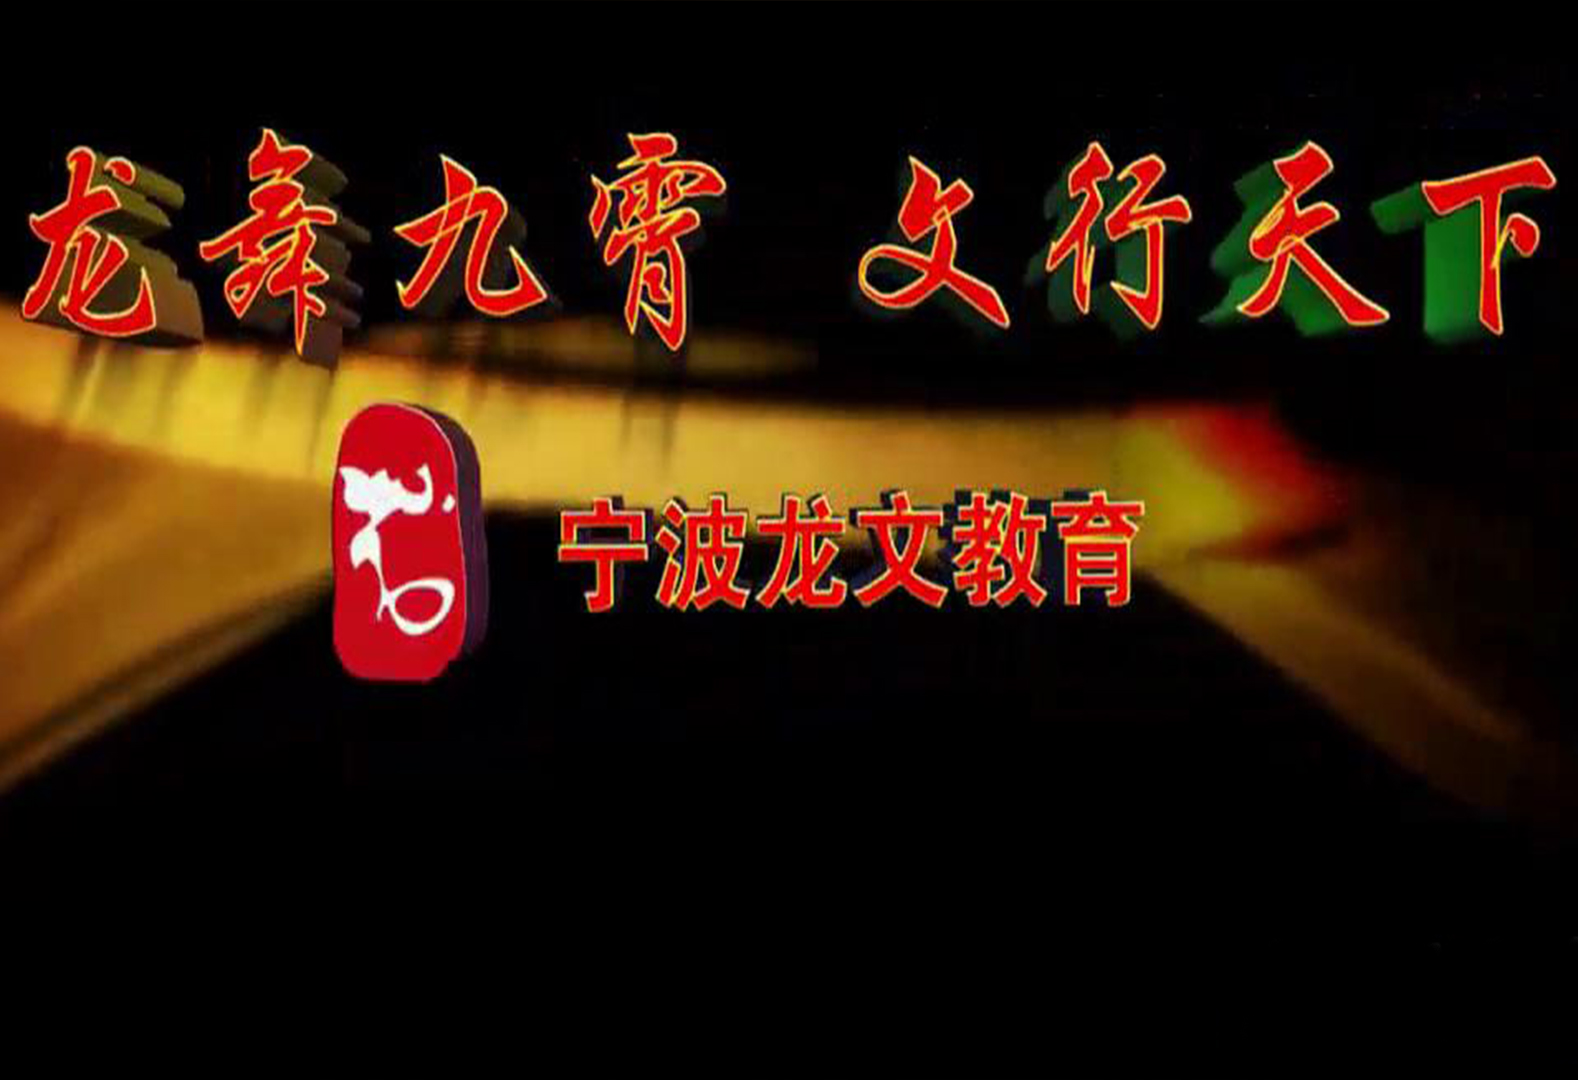 宣传片封面-28宁波龙文教育企业宣传片